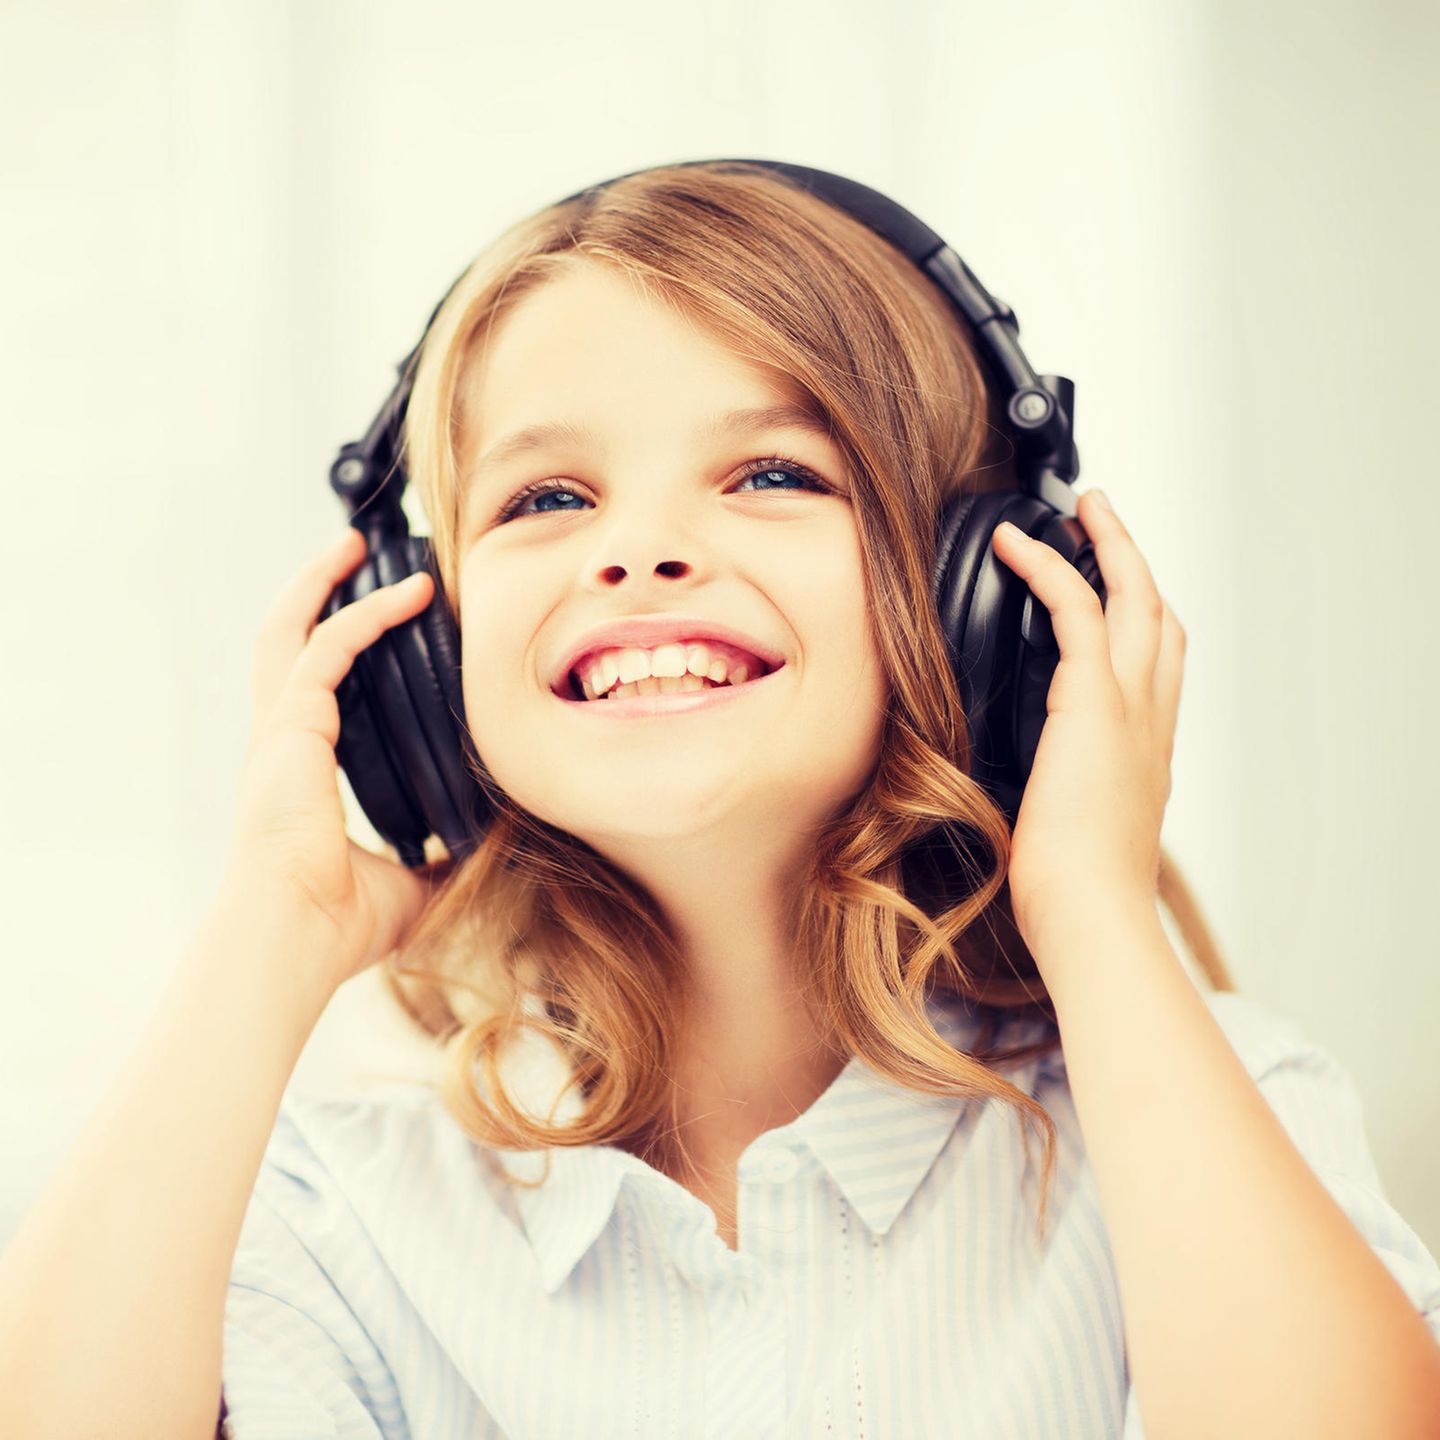 ZAPIG kopfhörer für Kinder mit 85dB Lautstärkebegrenzung Gehörschutz & Musik-Sharing-Funktion Faltbare Kinderkopfhörer Blau 